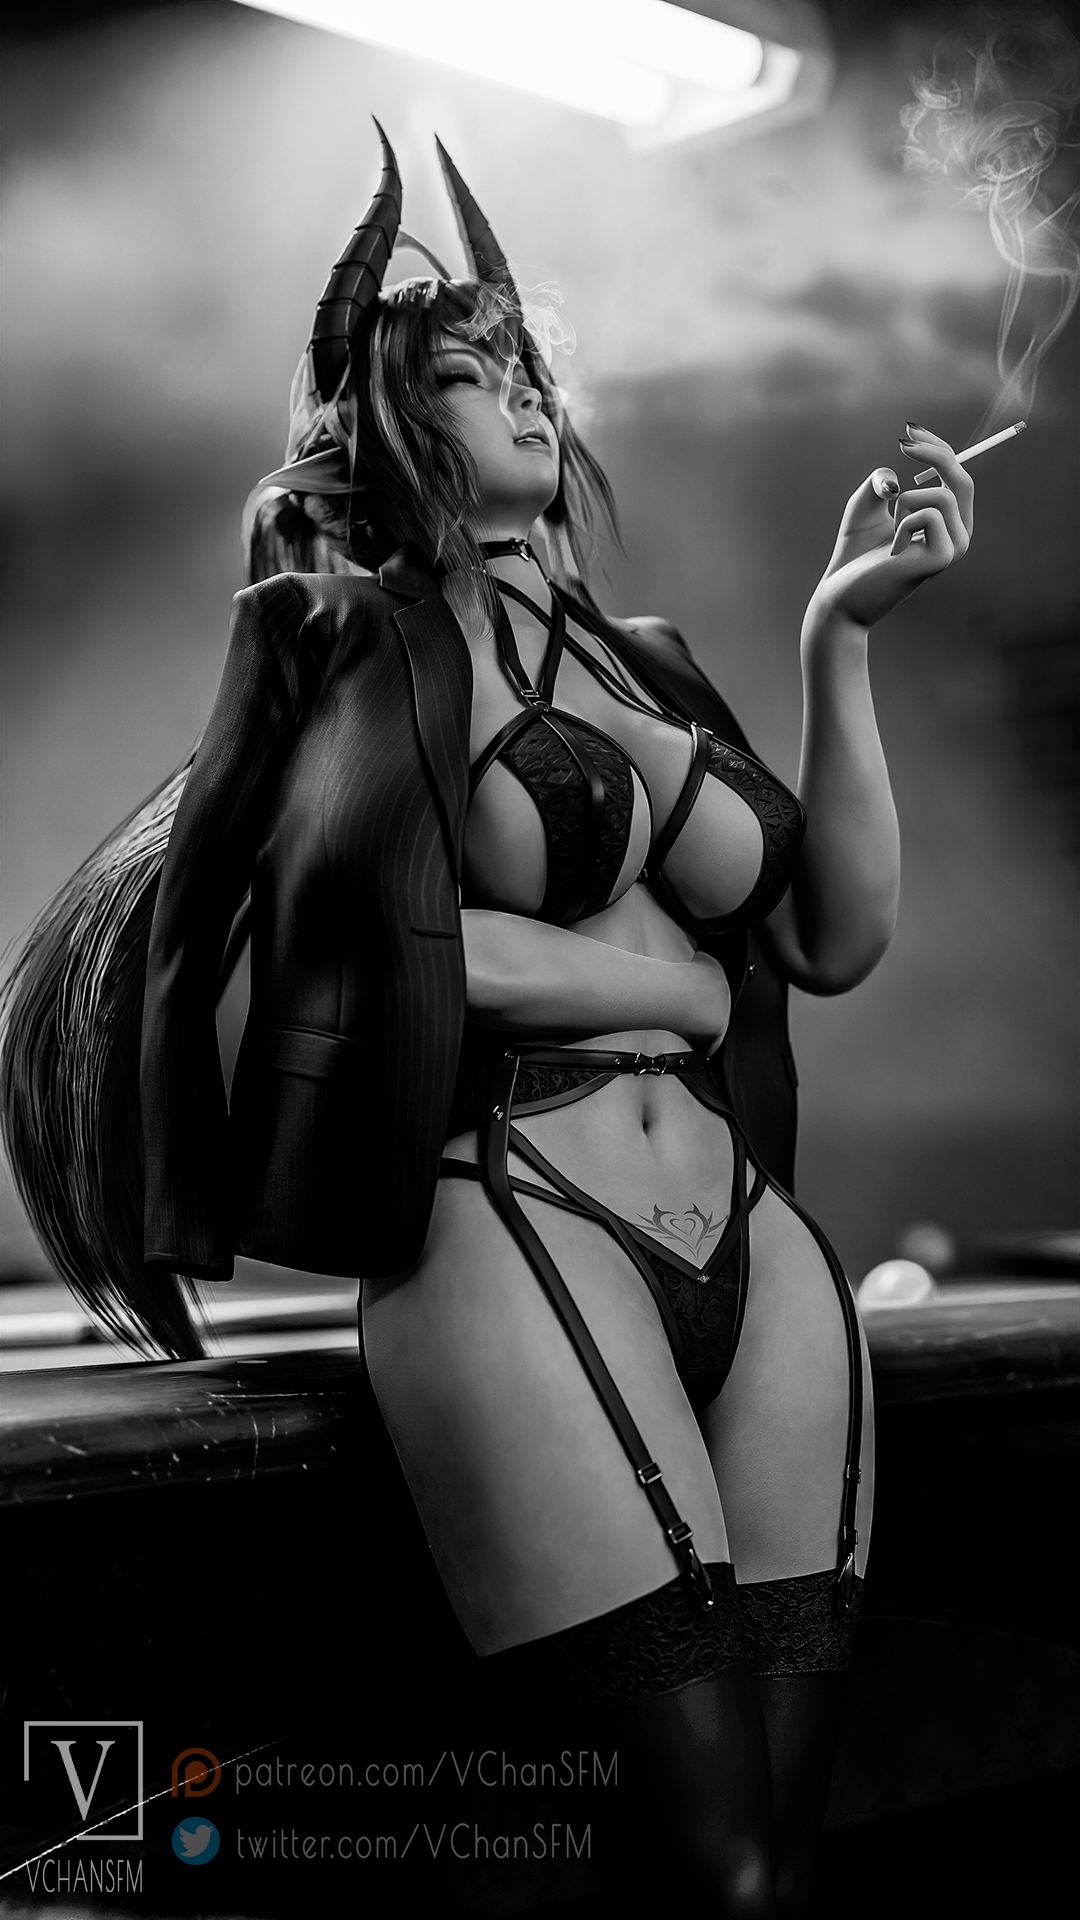 Sinia Noir Sinia Daemon Girl Big Tits Tits Rule34 Black And White Pool Table Cigarette Lingerie Garter Belt Bra